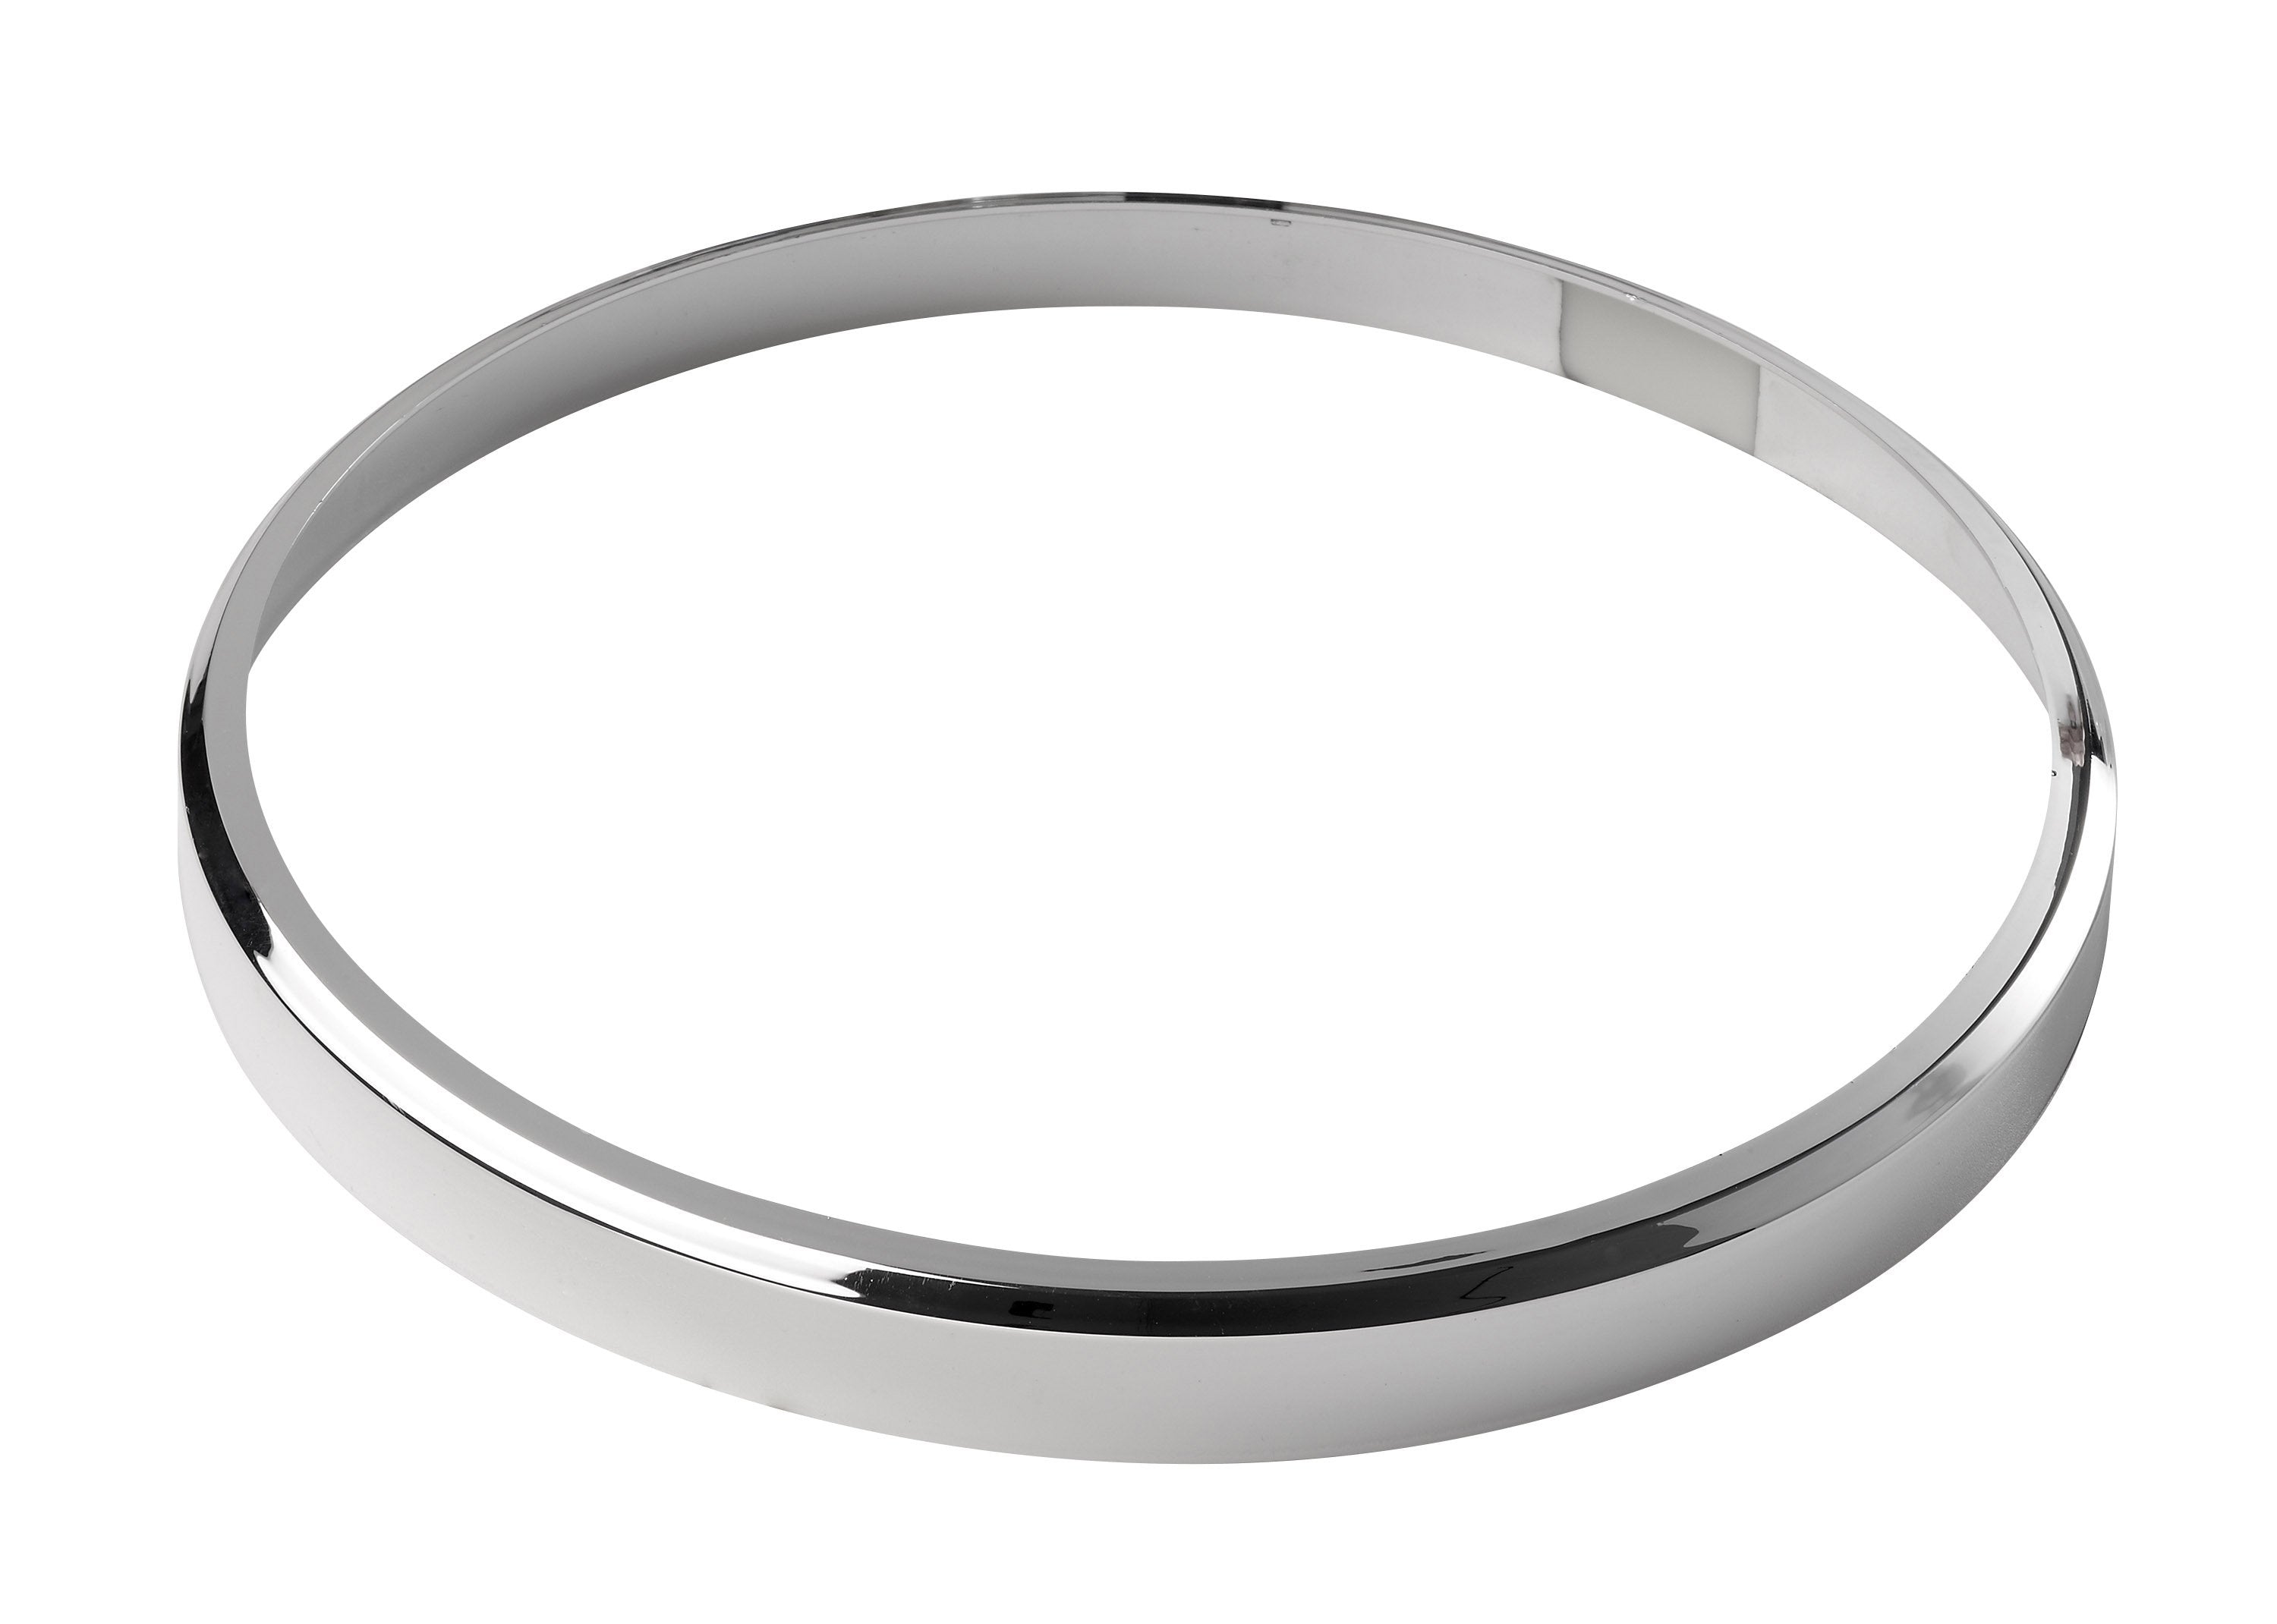 Chrome trim ring for Vega fitting